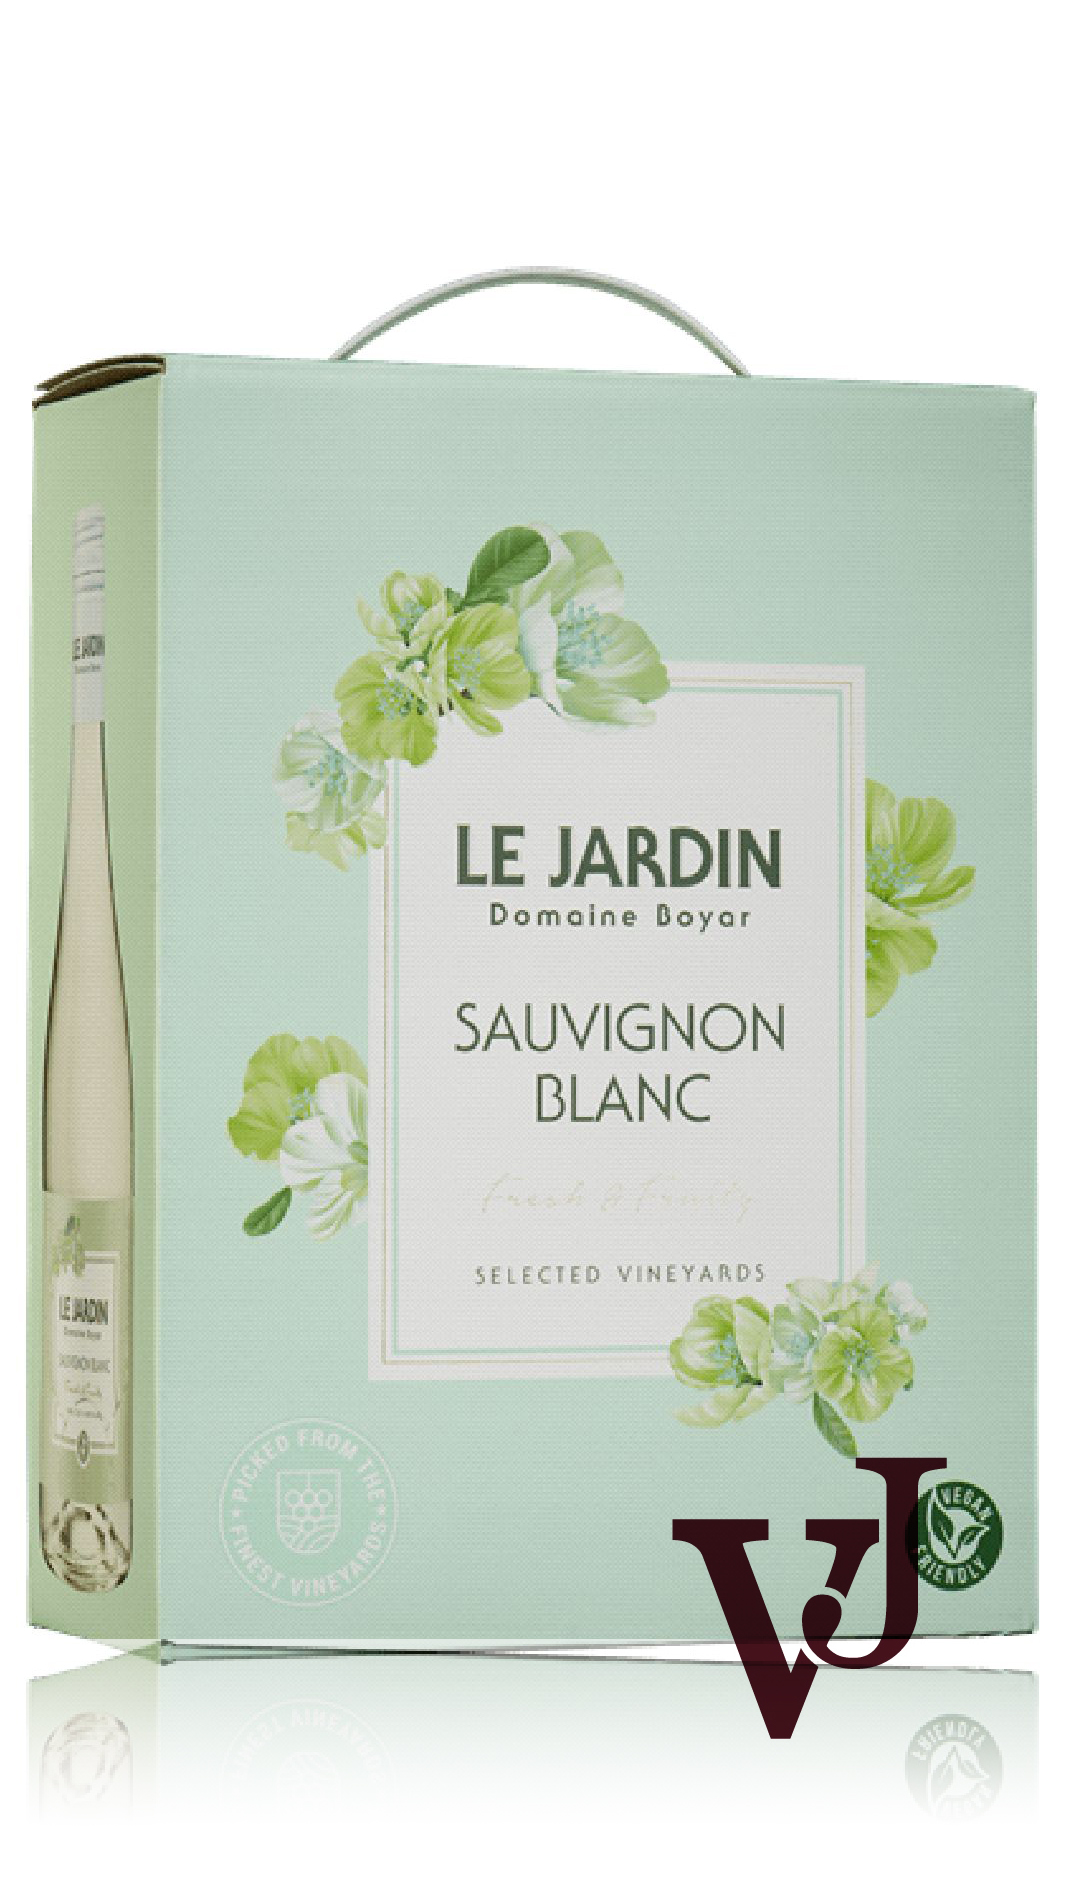 Vitt Vin - Le Jardin Domaine Boyar Sauvignon blanc 2022 artikel nummer 114308 från producenten Domaine Boyar från området Bulgarien